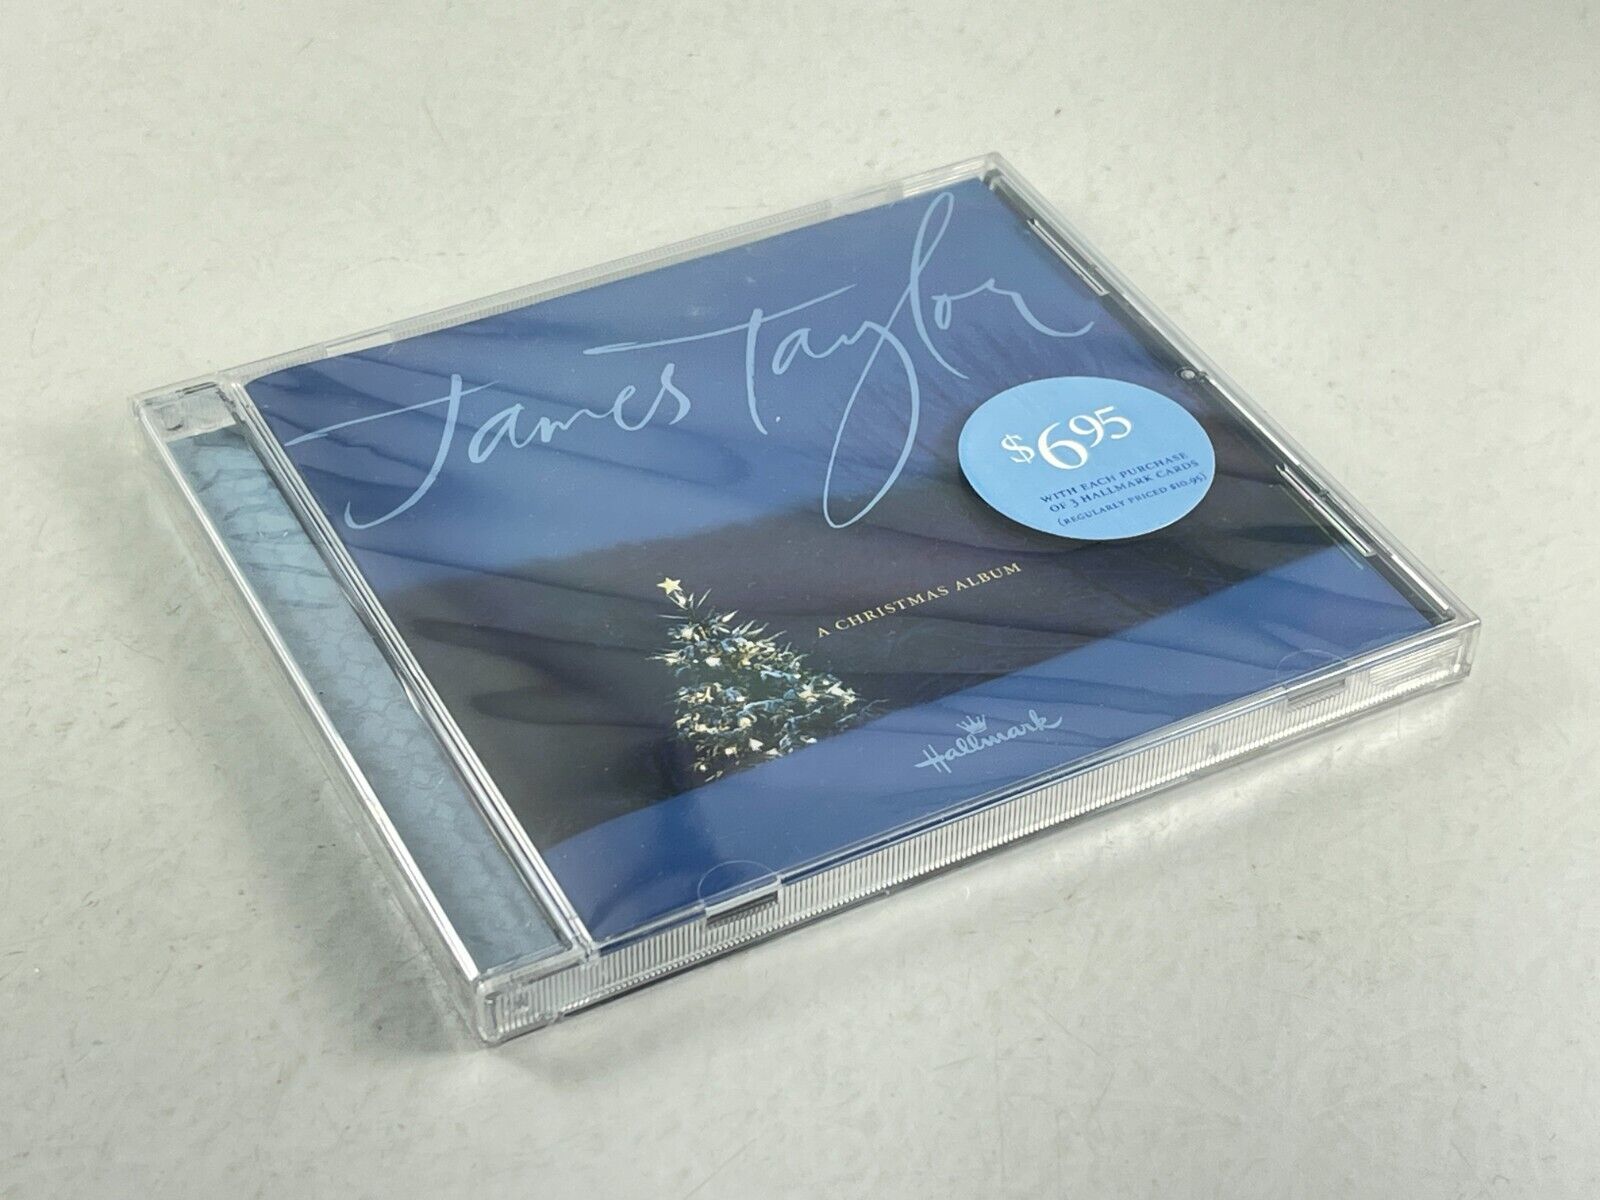 2004 Hallmark James Taylor A Christmas Album Holiday Jingle Bells Music CD -NEW